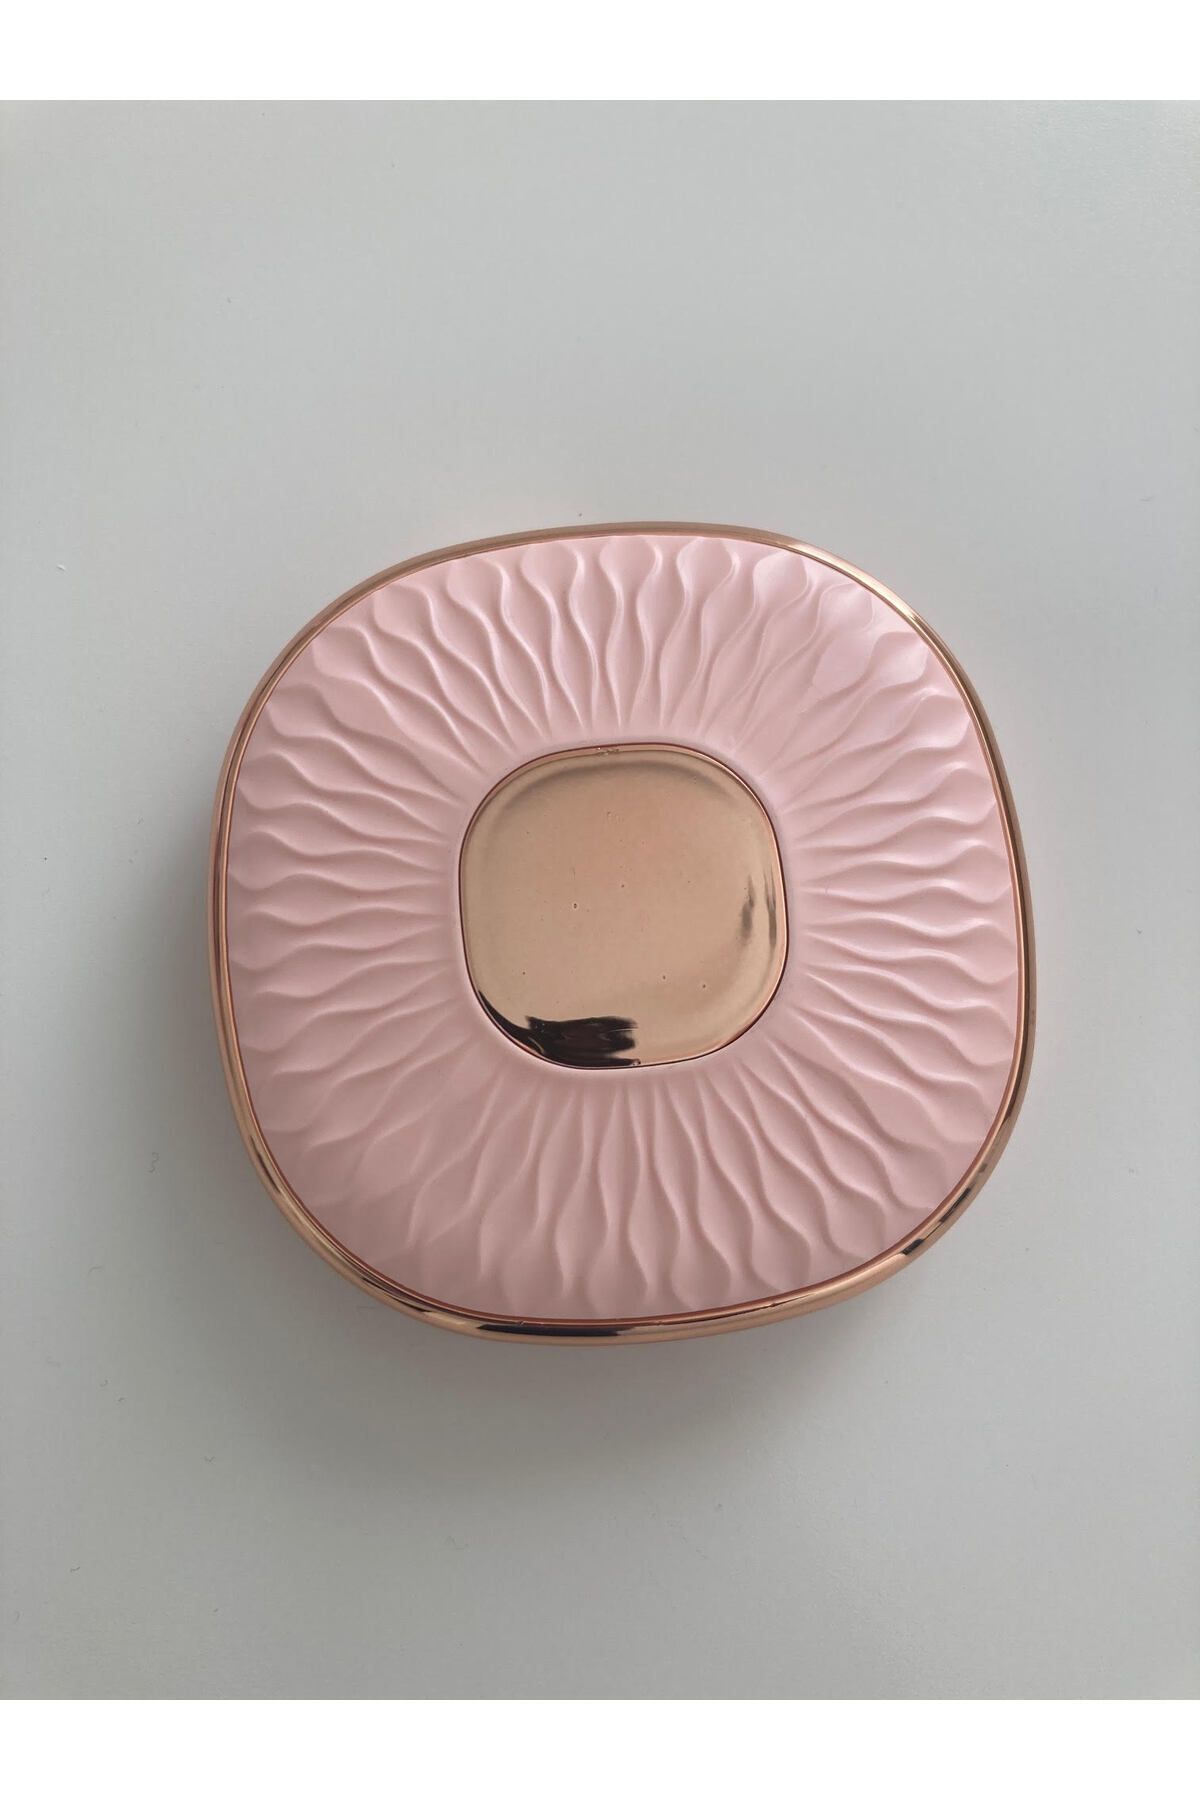 BİYUTREND Çift Taraflı Taşınabilir Kompakt Makyaj Aynası Katlanır Mini Çanta Makyaj El Aynası